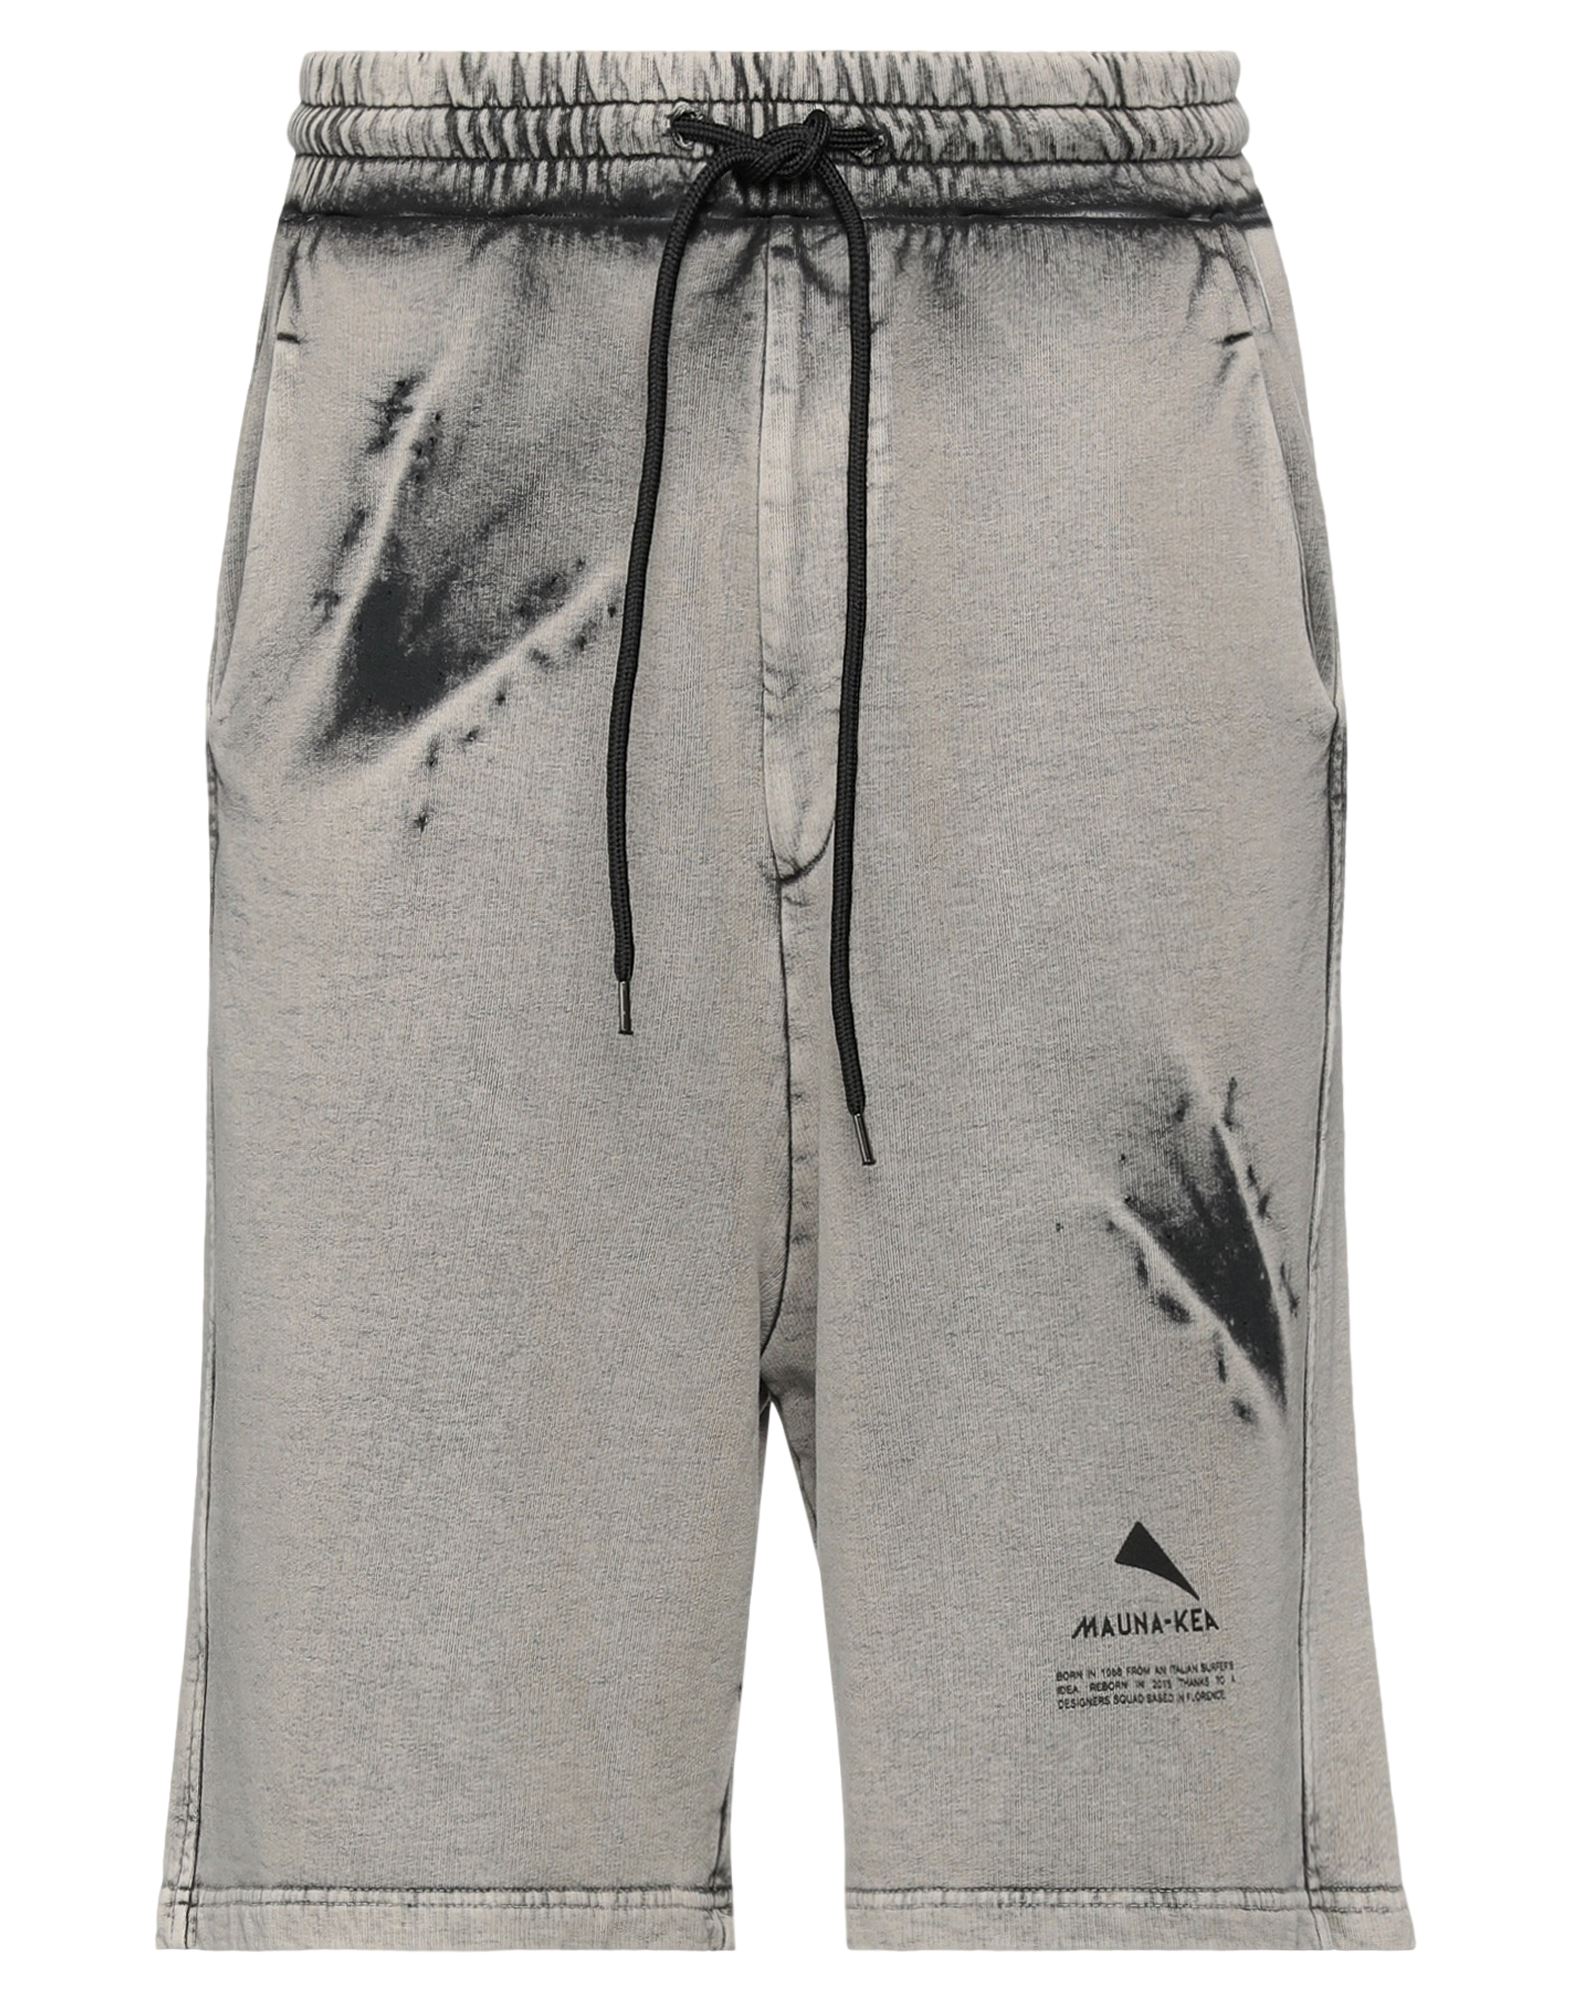 Mauna Kea Man Shorts & Bermuda Shorts Dove Grey Size L Cotton